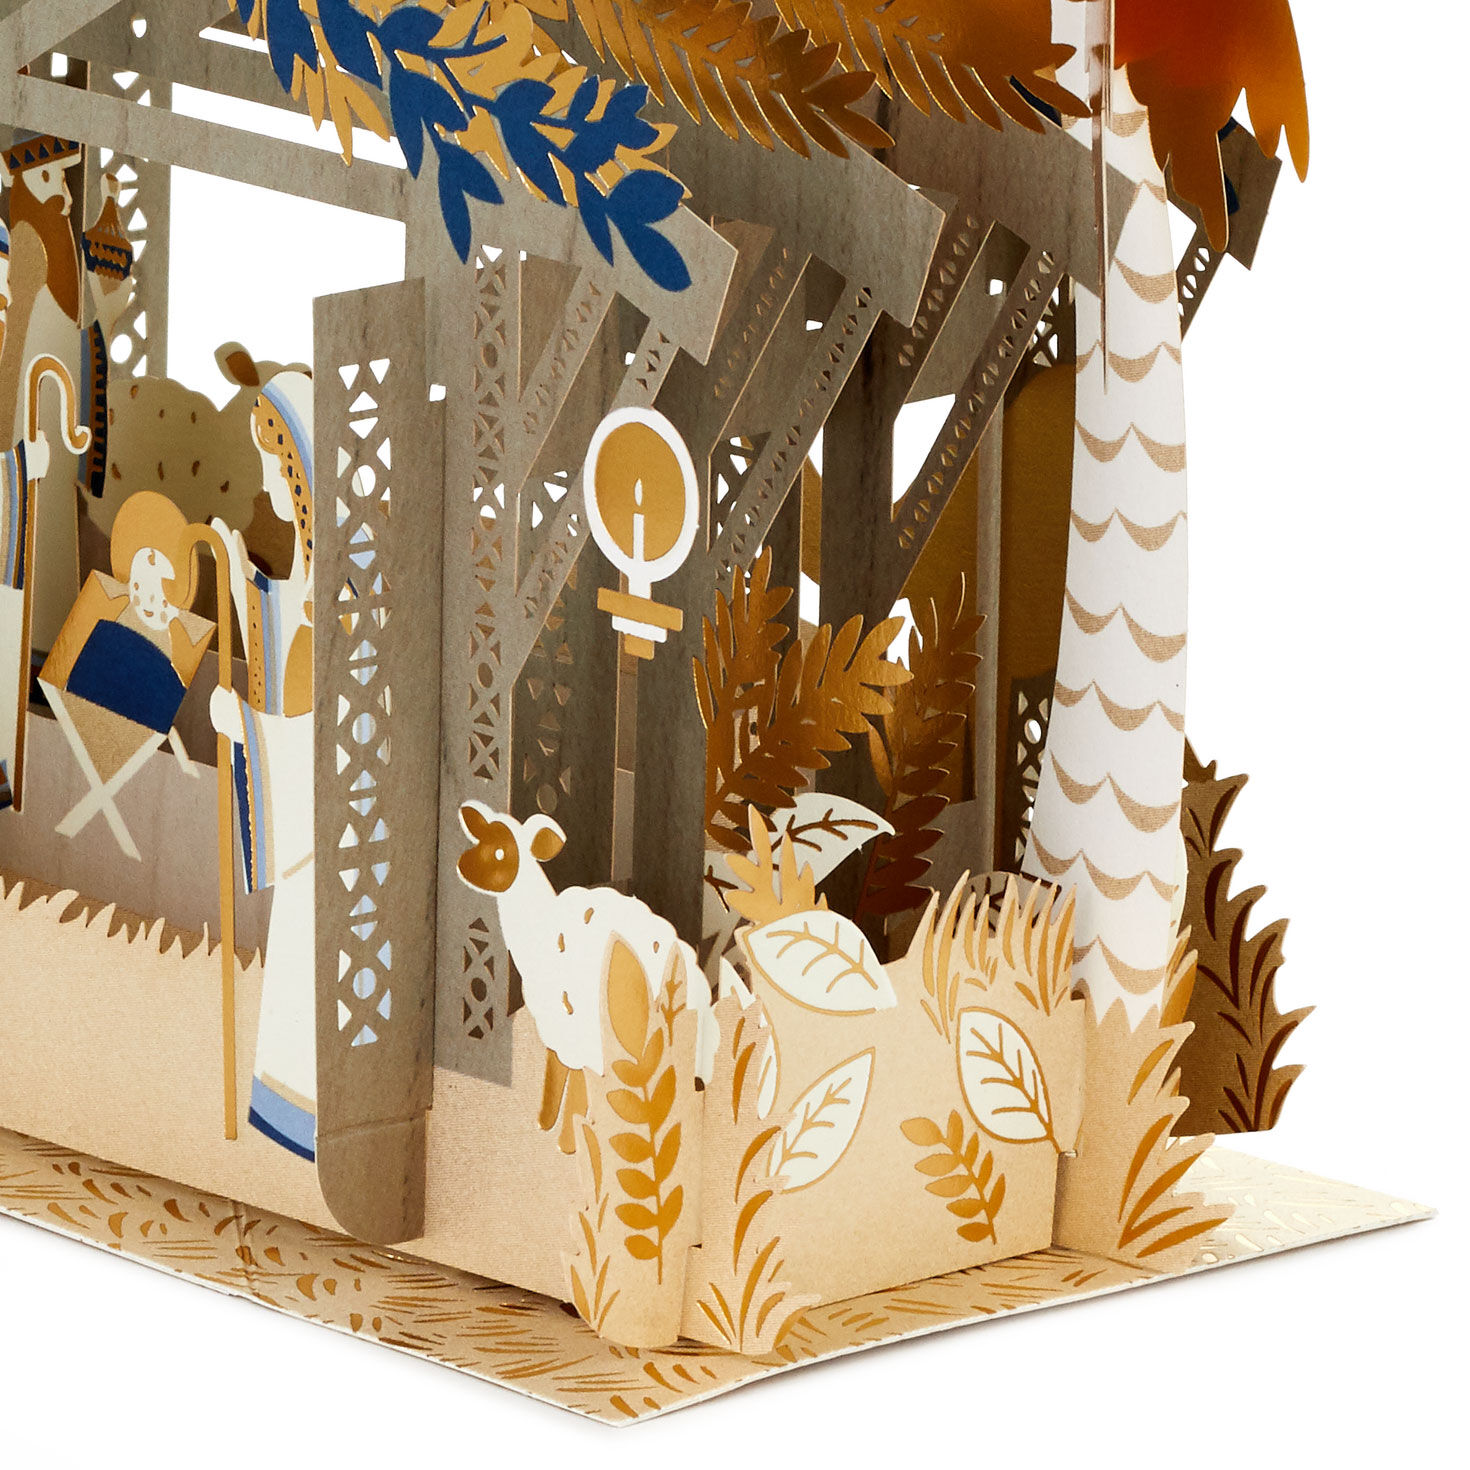 Jumbo Nativity Scene 3D Pop-Up Christmas Card for only USD 24.99 | Hallmark